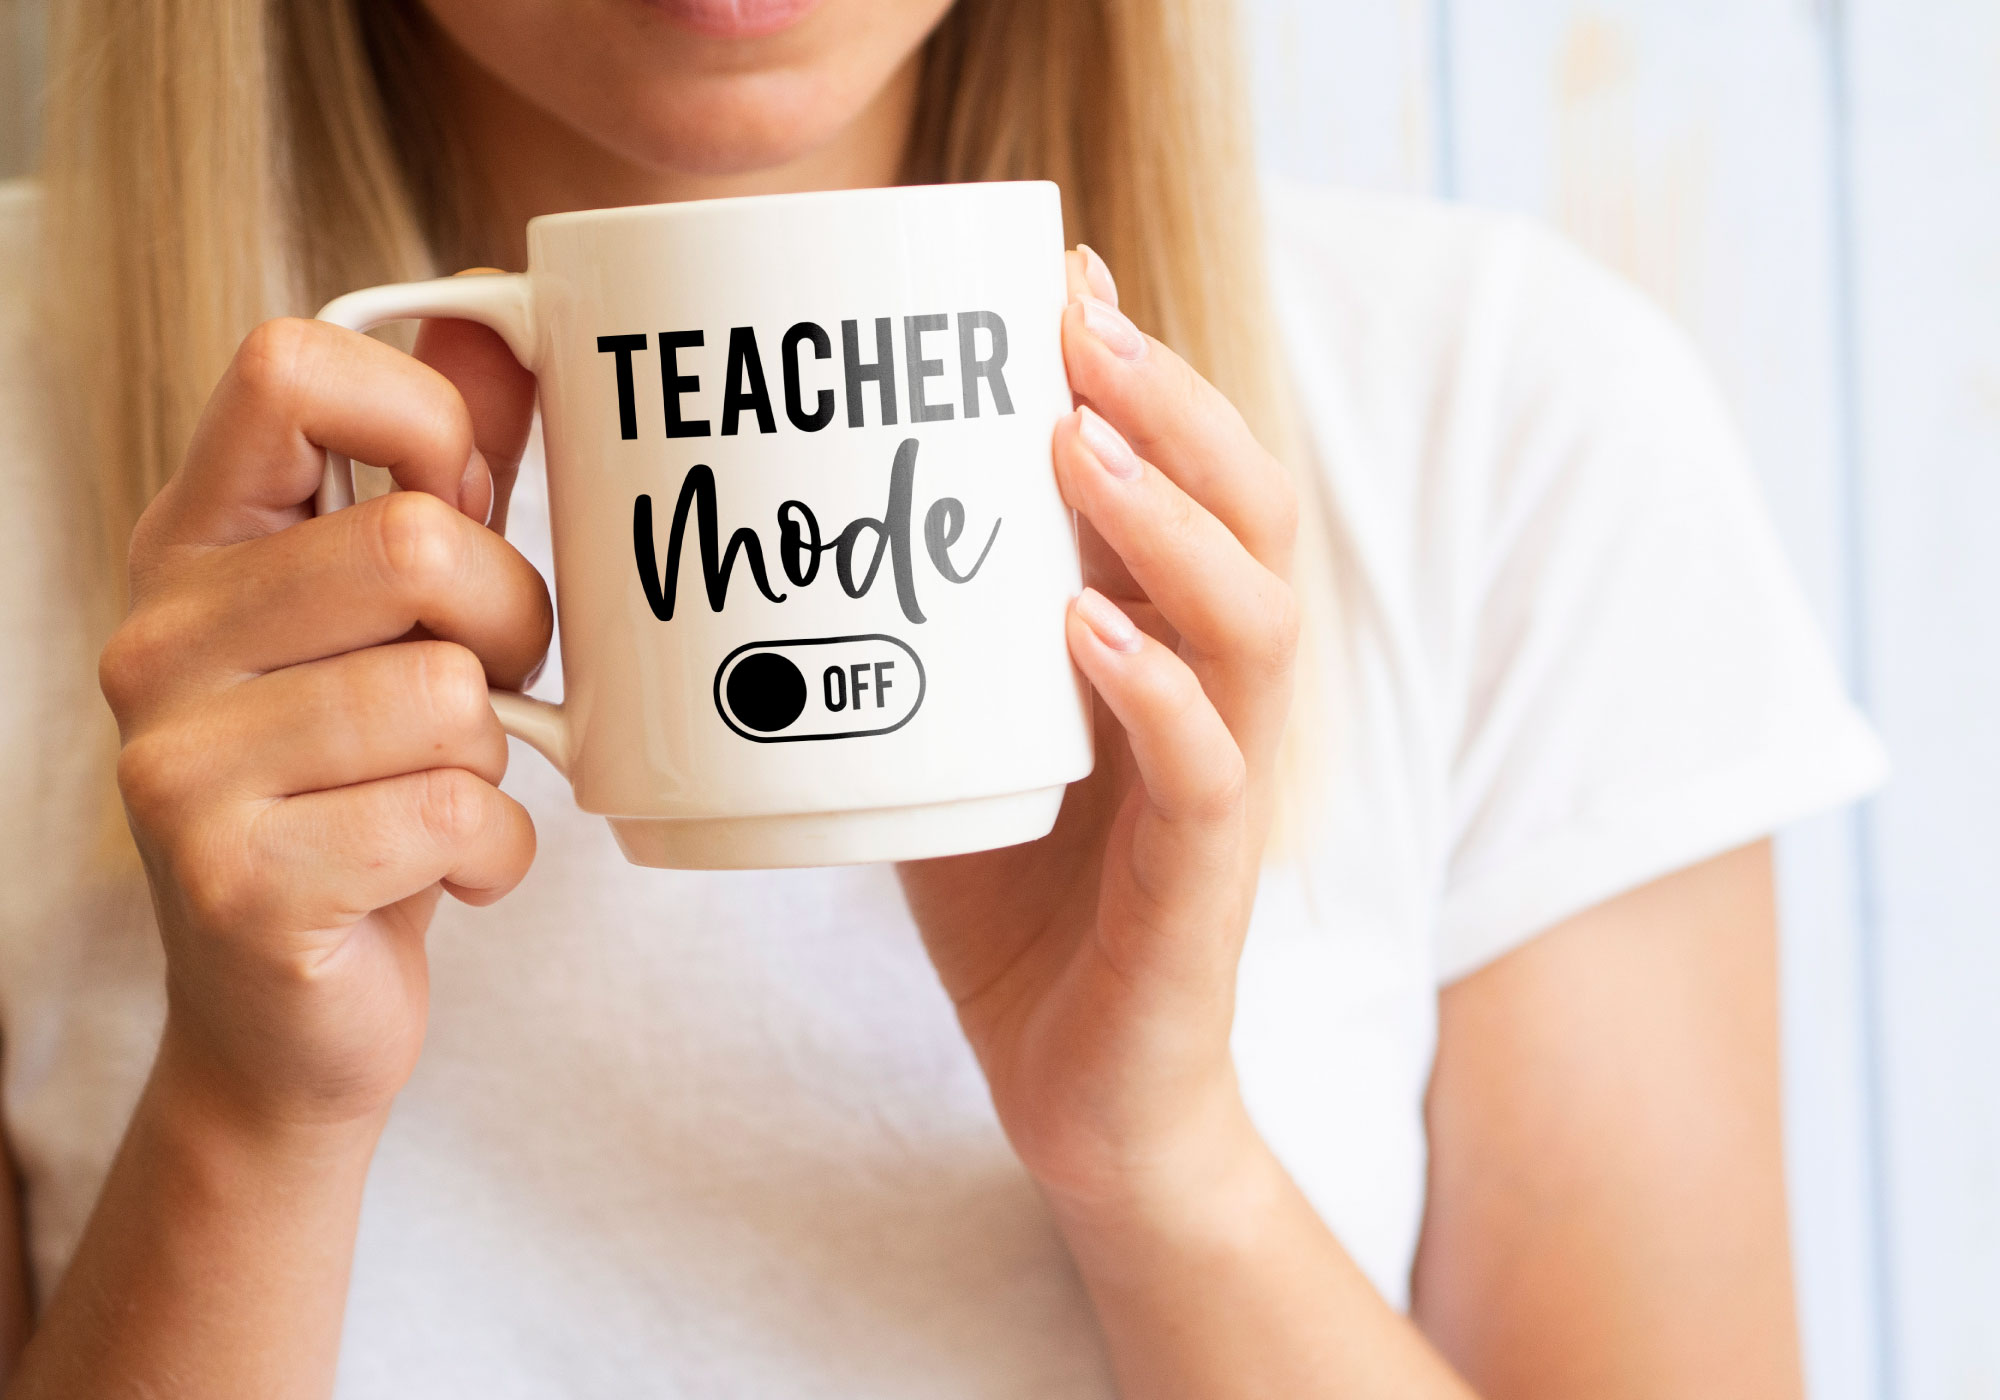 Free Teacher Mode Off SVG